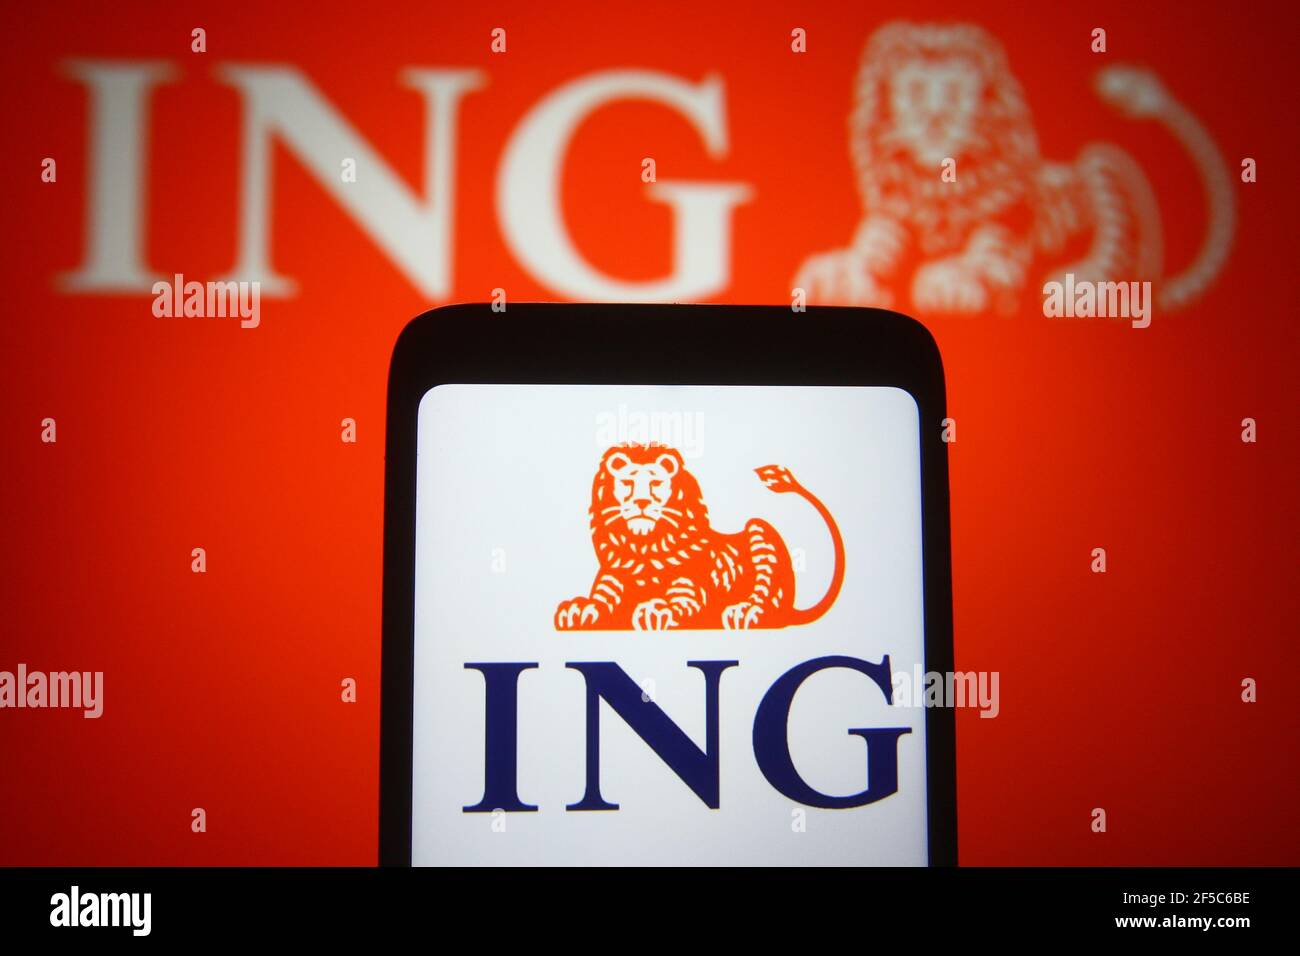 Ukraine. März 2021, 25th. In dieser Abbildung ist das ING (Internationale Nederlanden Groep) Logo eines niederländischen Bank- und Finanzdienstleistungsunternehmens auf einem Smartphone-Bildschirm zu sehen. (Foto von Pavlo Gonchar/SOPA Images/Sipa USA) Quelle: SIPA USA/Alamy Live News Stockfoto